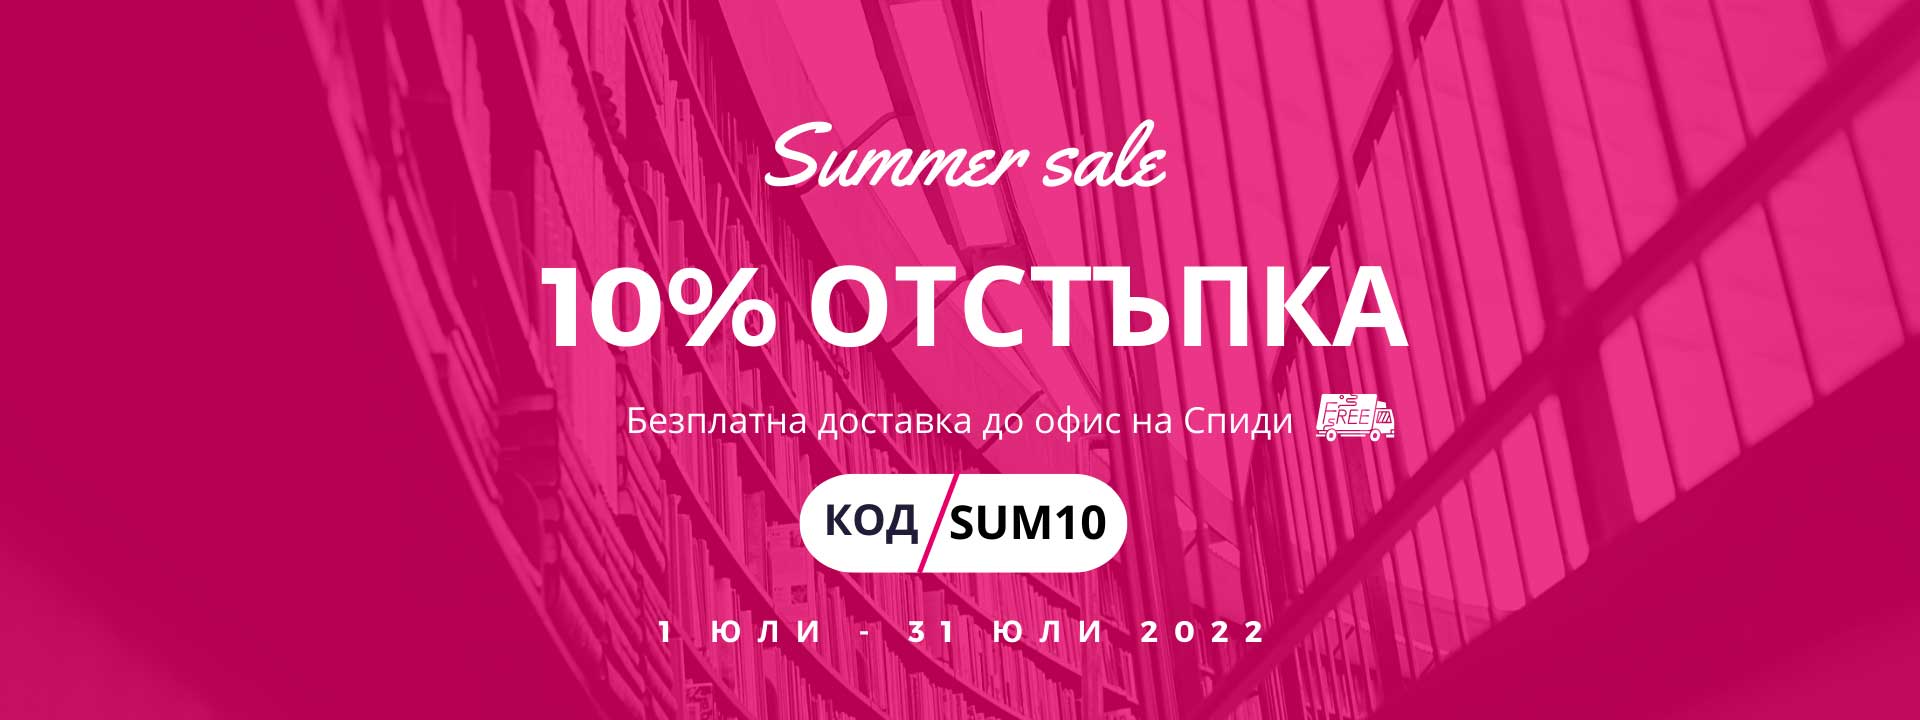 Summer-sale-(1)